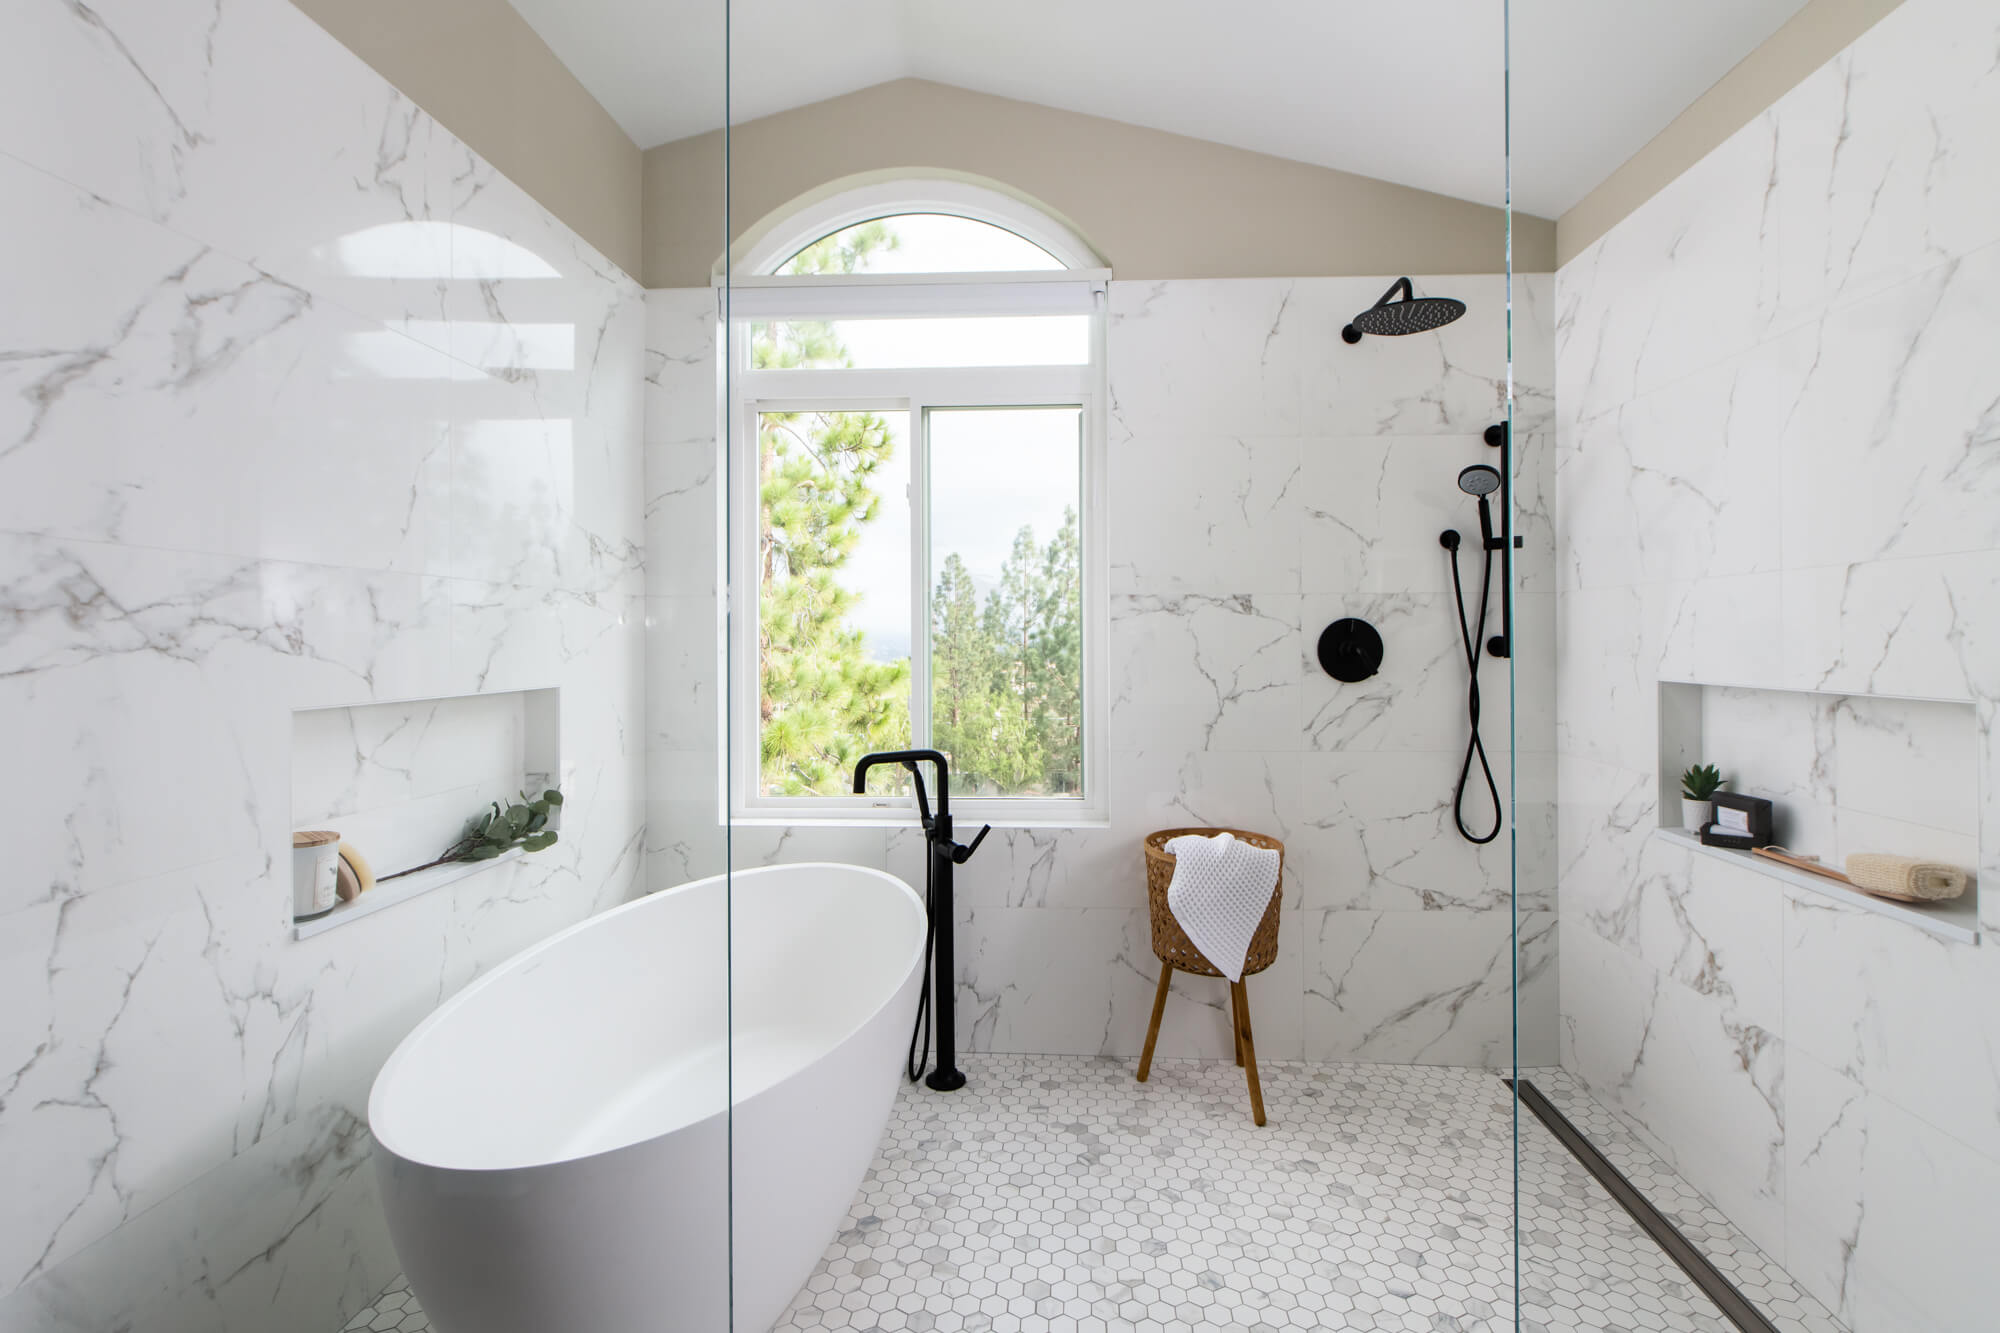 Shower Tile Designs - shower remodeling guide